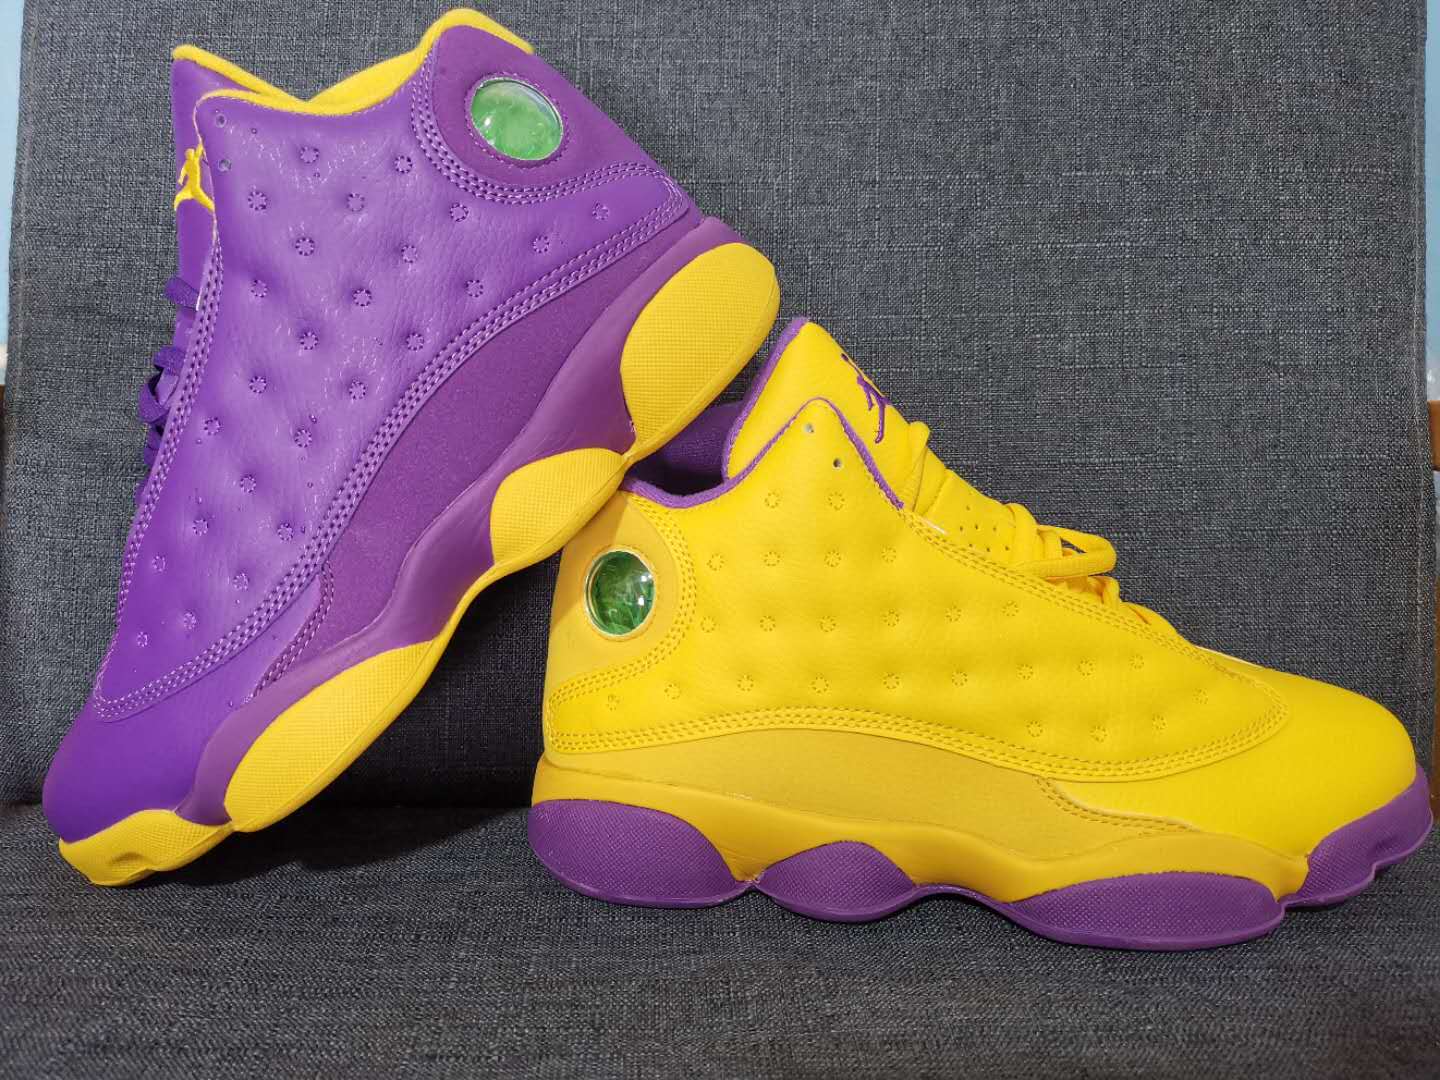 New Air Jordan 13 Purple Yellow